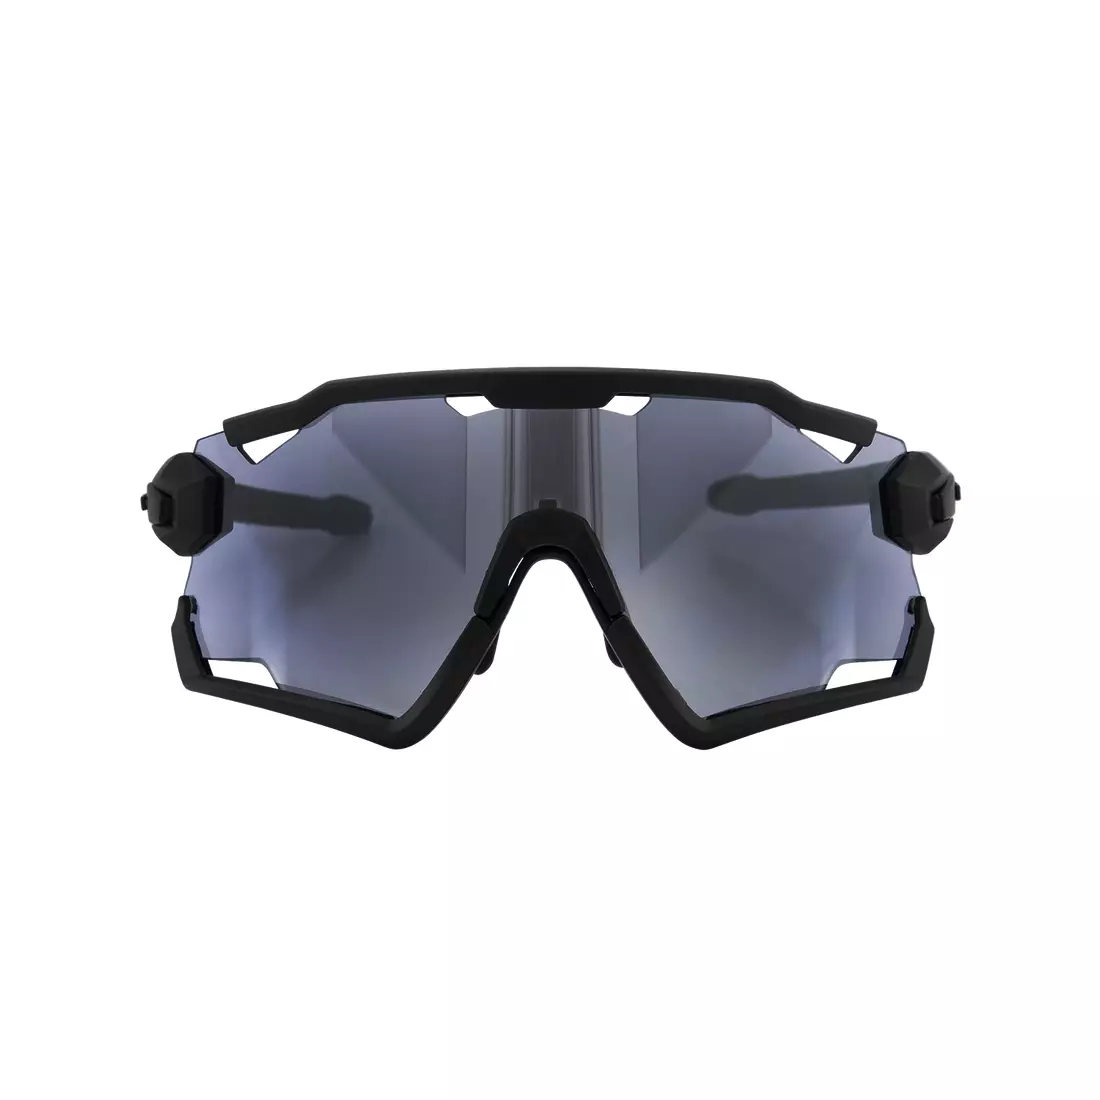 ROGELLI športové okuliare s vymeniteľnými sklami SWITCH čierna